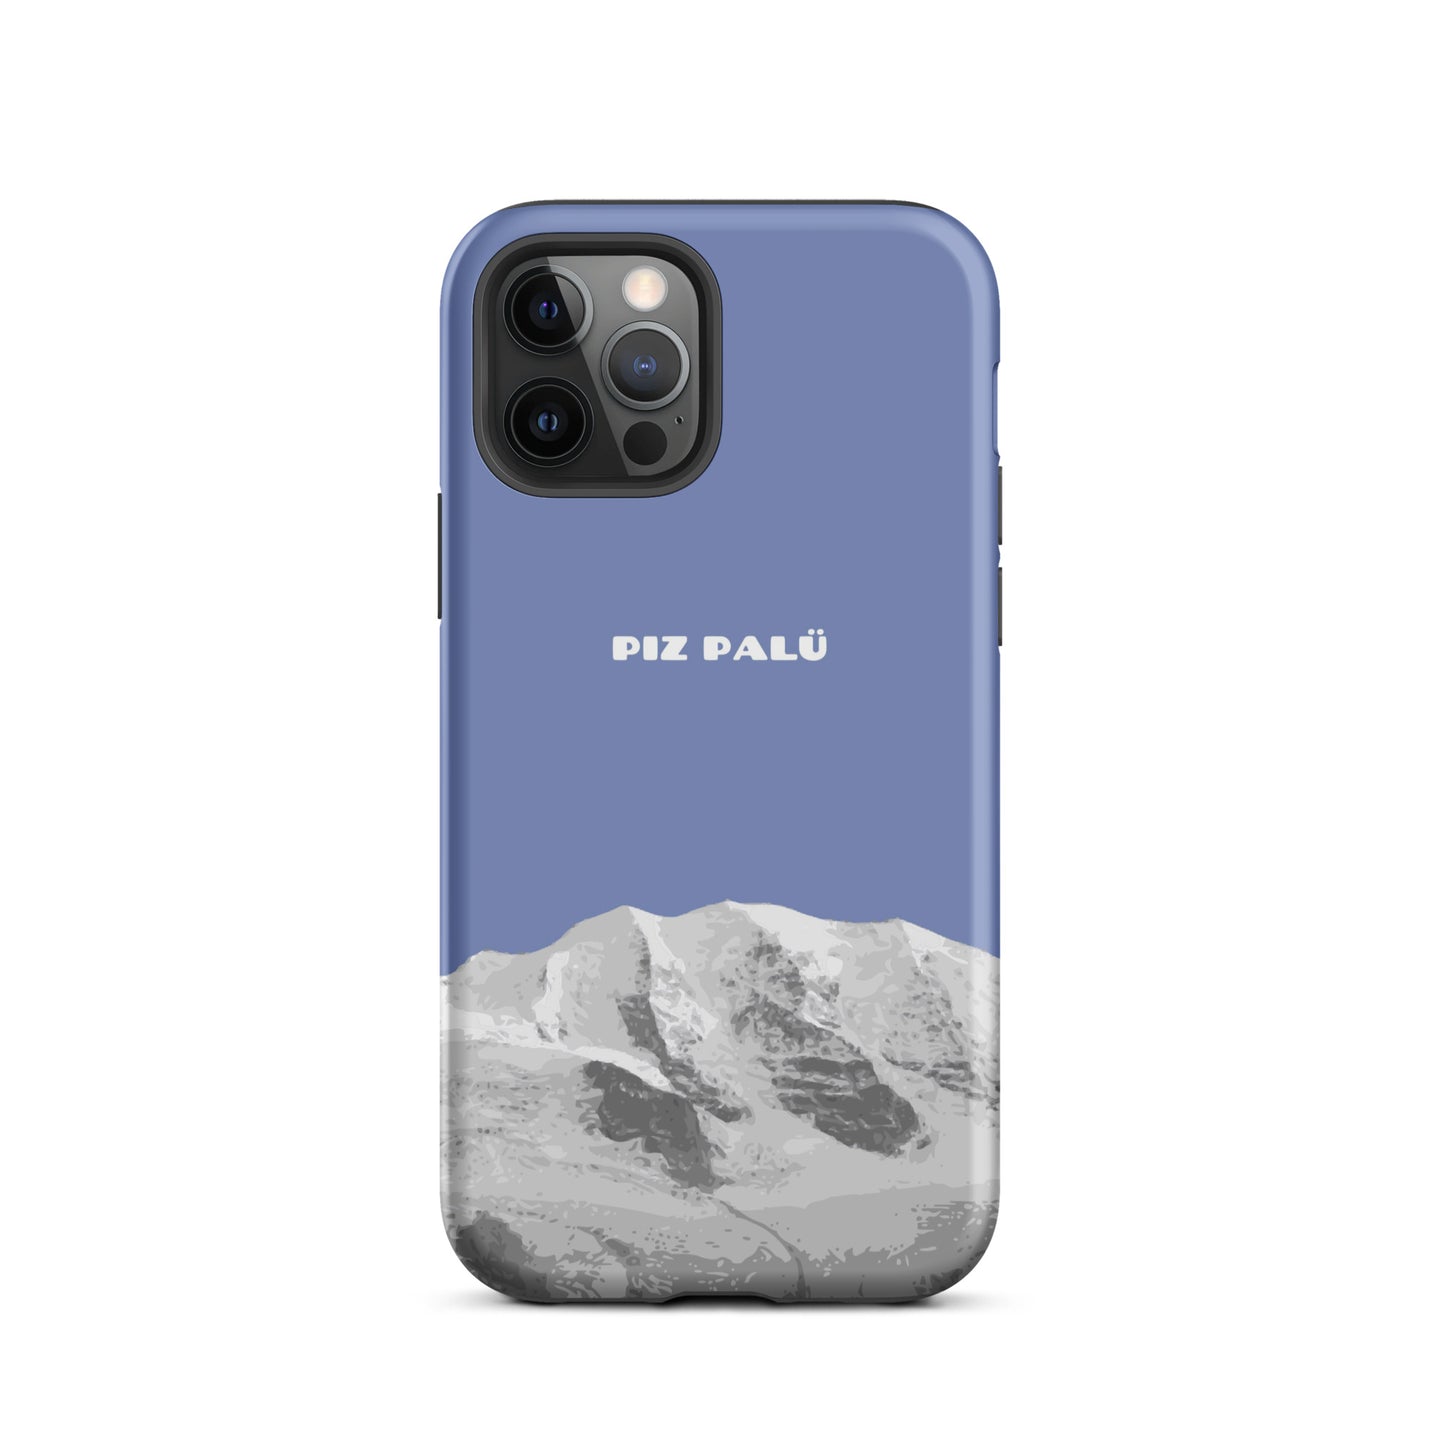 Hülle für das iPhone 12 Pro von Apple in der Farbe Pastellblau, dass den Piz Palü in Graubünden zeigt.